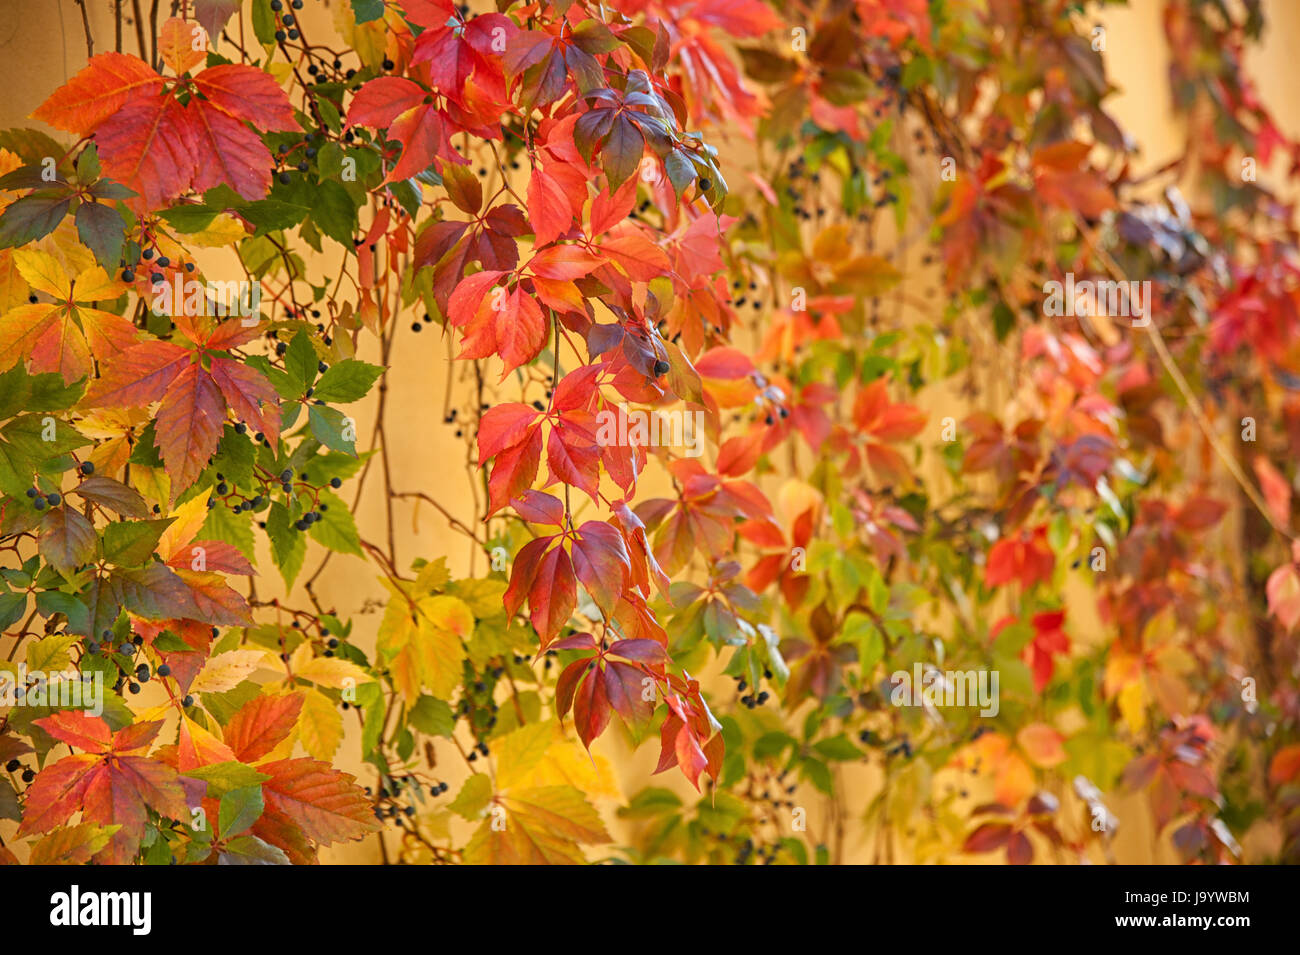 Les feuilles d'automne à Pienza, Toscane - Italie Banque D'Images